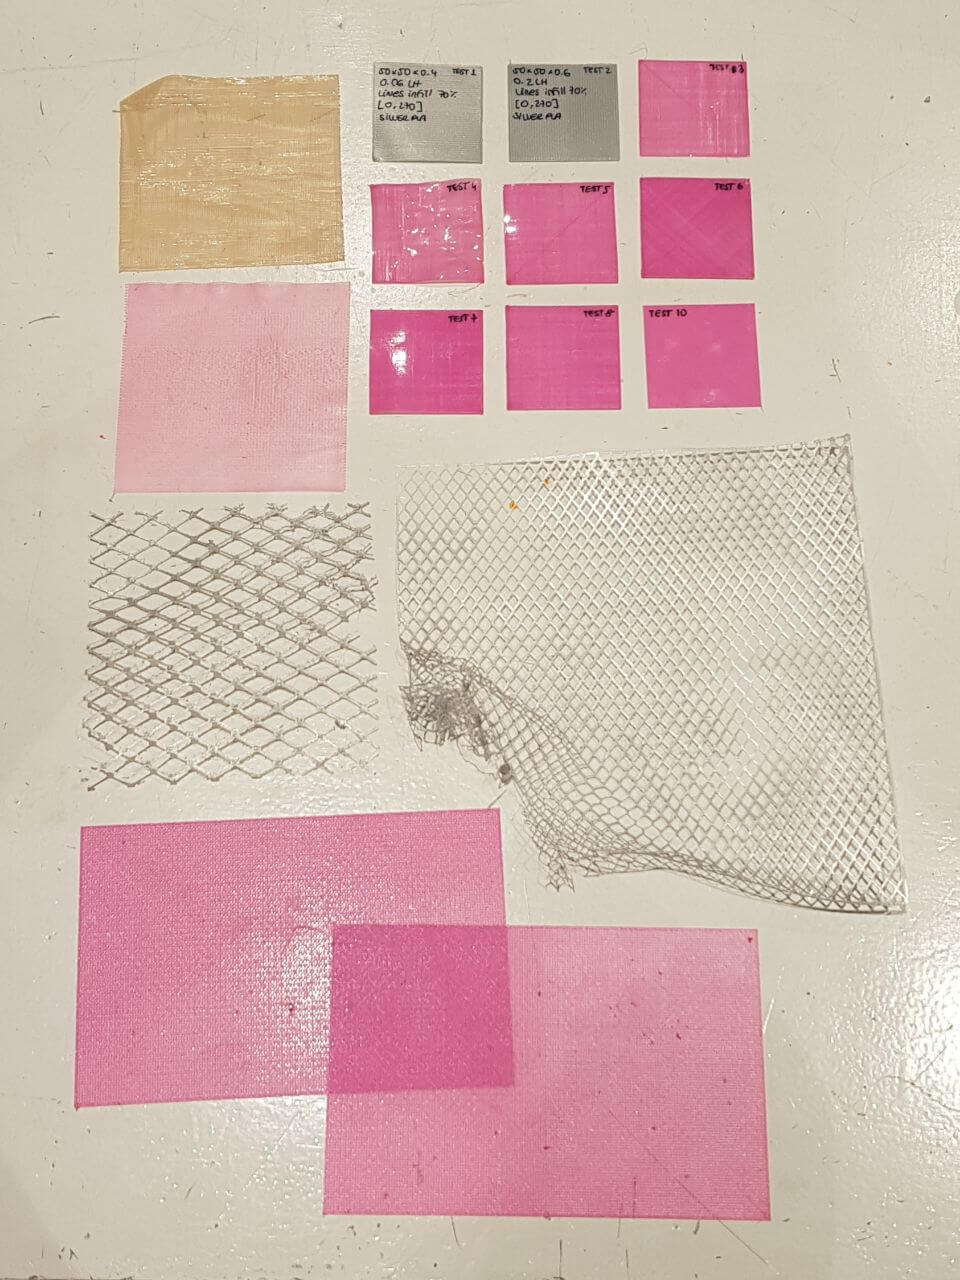 3D printed fabric samples